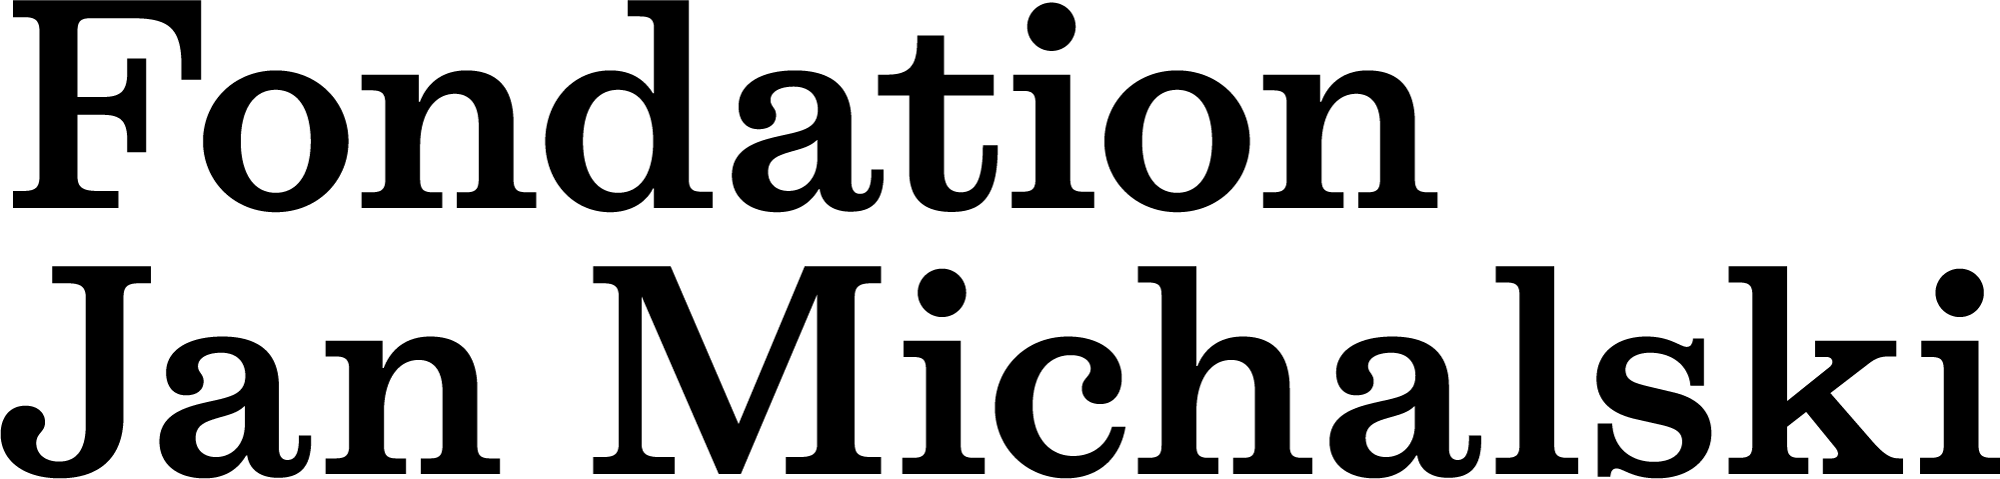 FJM-Logo-court-CMYK-Black.png